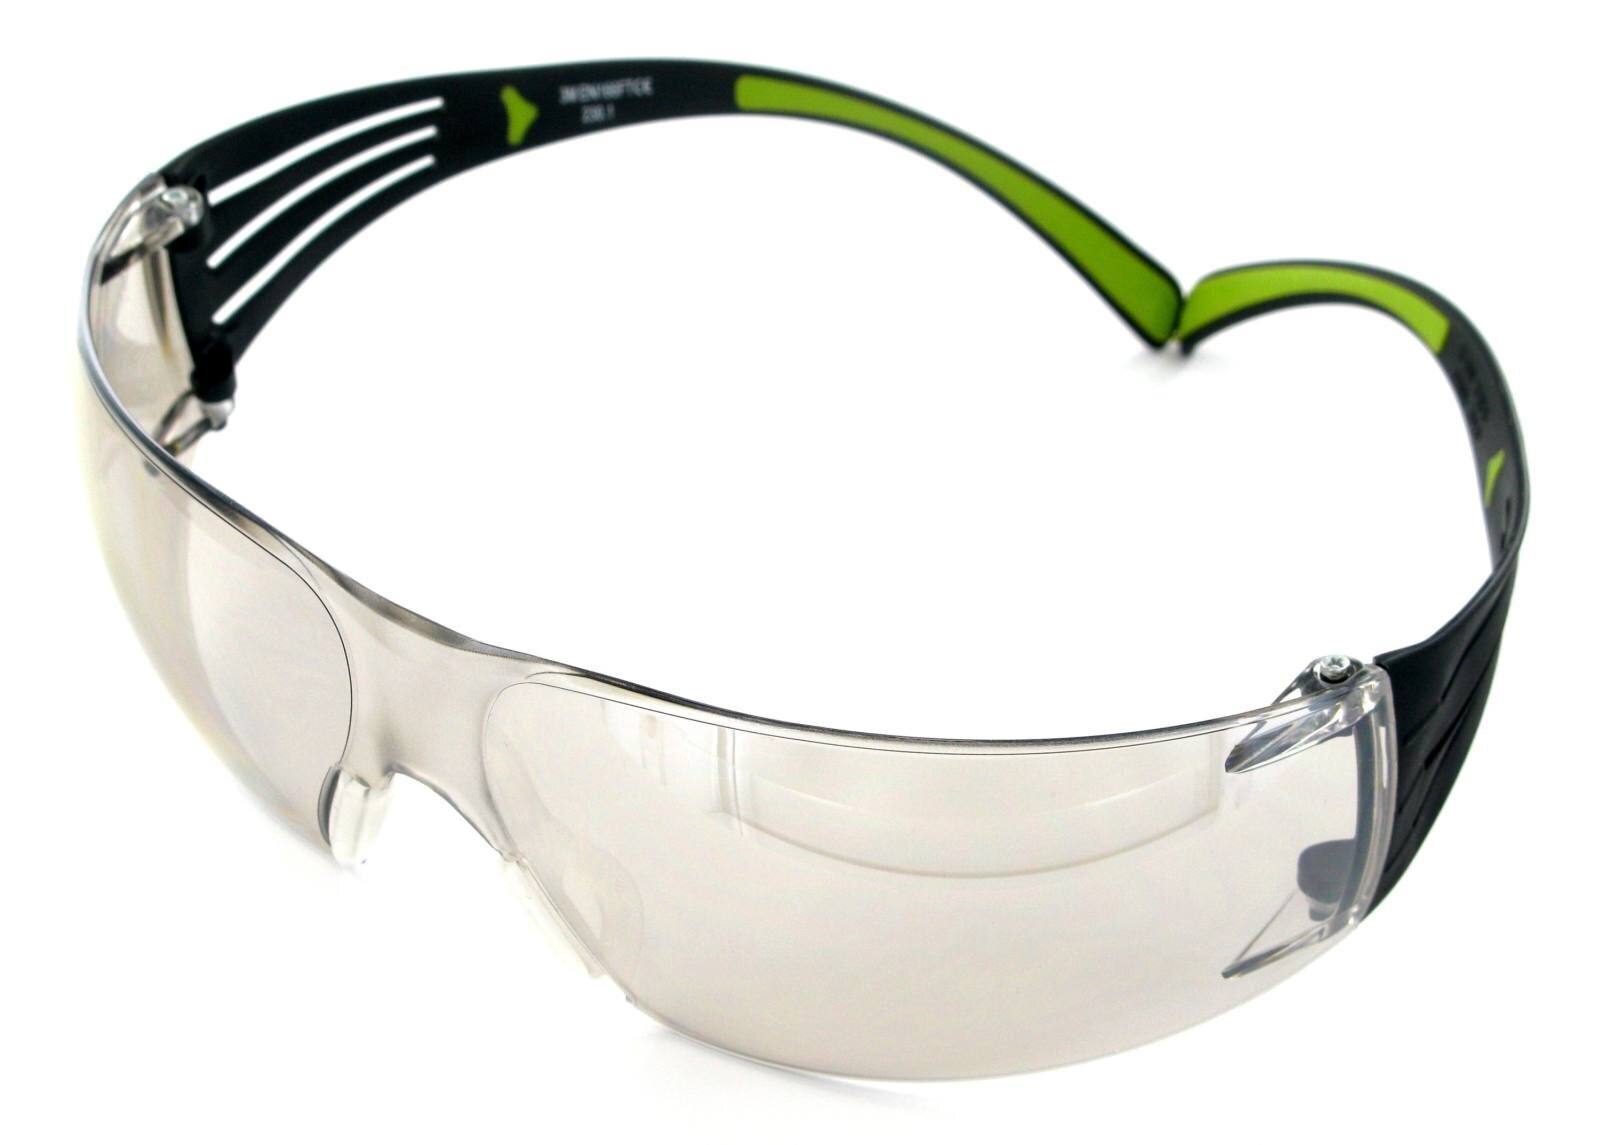 3M SecureFit 400 -suojalasit, musta/vihreä, naarmuuntumista estävä pinnoite, peililinssi sisä- ja ulkokäyttöön, SF410AS-EU